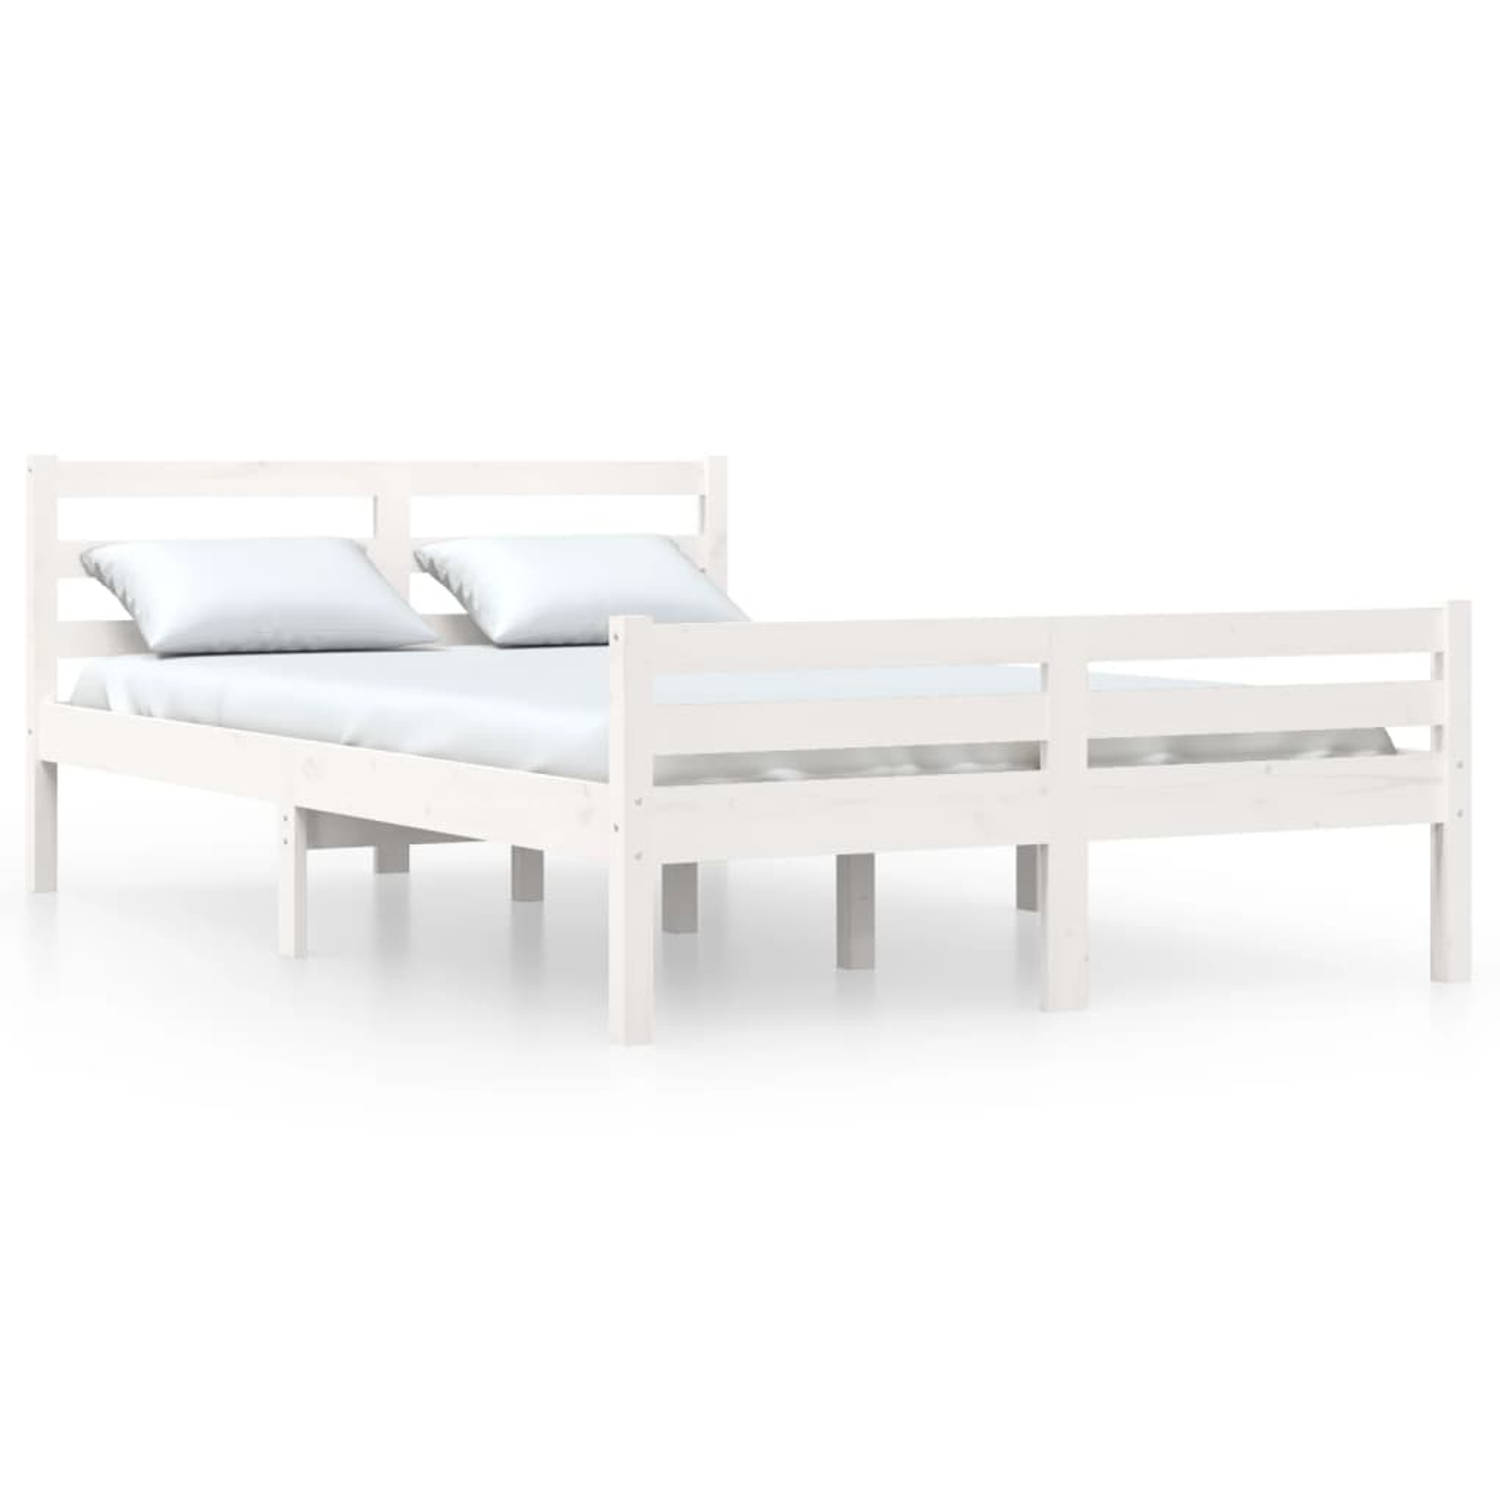 The Living Store Bedframe massief hout wit 140x190 cm - Bedframe - Bedframes - Bed - Bedbodem - Ledikant - Bed Frame - Massief Houten Bedframe - Slaapmeubel - Tweepersoonsbed - Bed